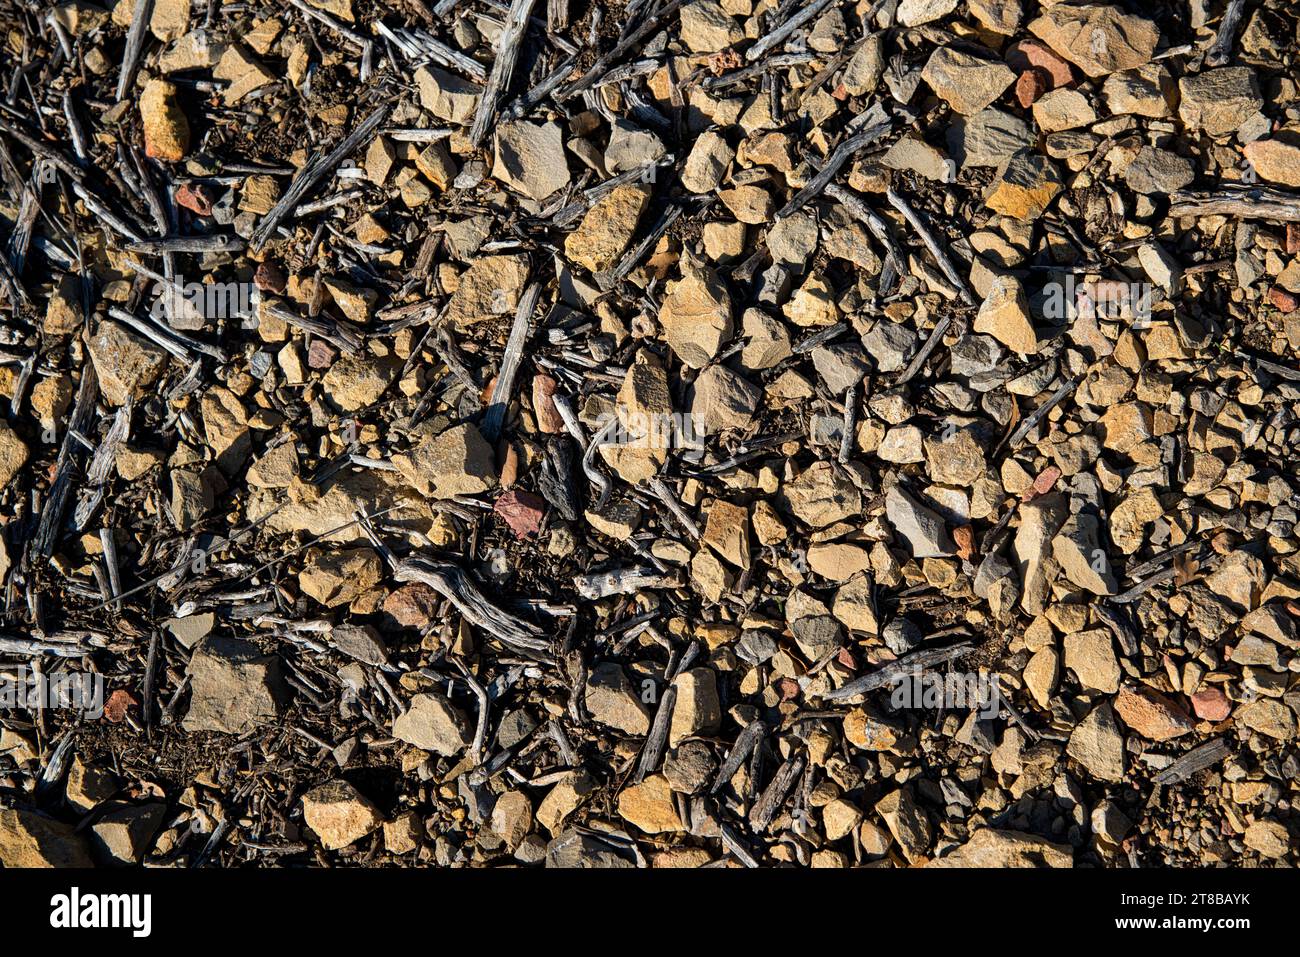 le sol dans les garrigues et les collines de provence montrant des débris végétaux et de bois et de petits cailloux concassés sur une terre seche et a Foto Stock